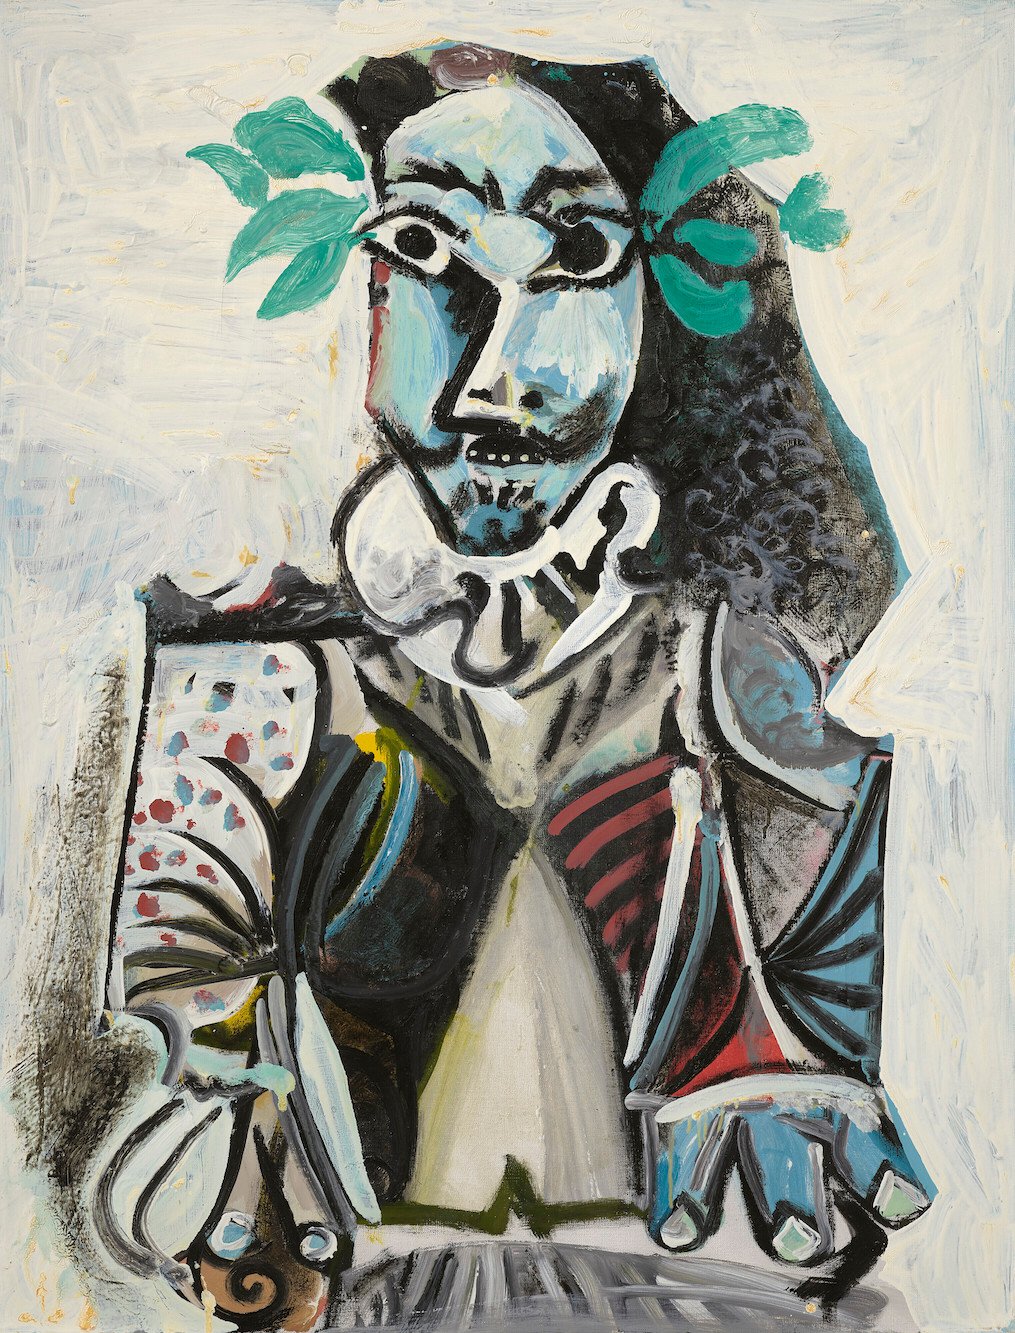 Pablo Picasso, Buste d’homme lauré, 1969. Courtesy of Christie’s Images Ltd.